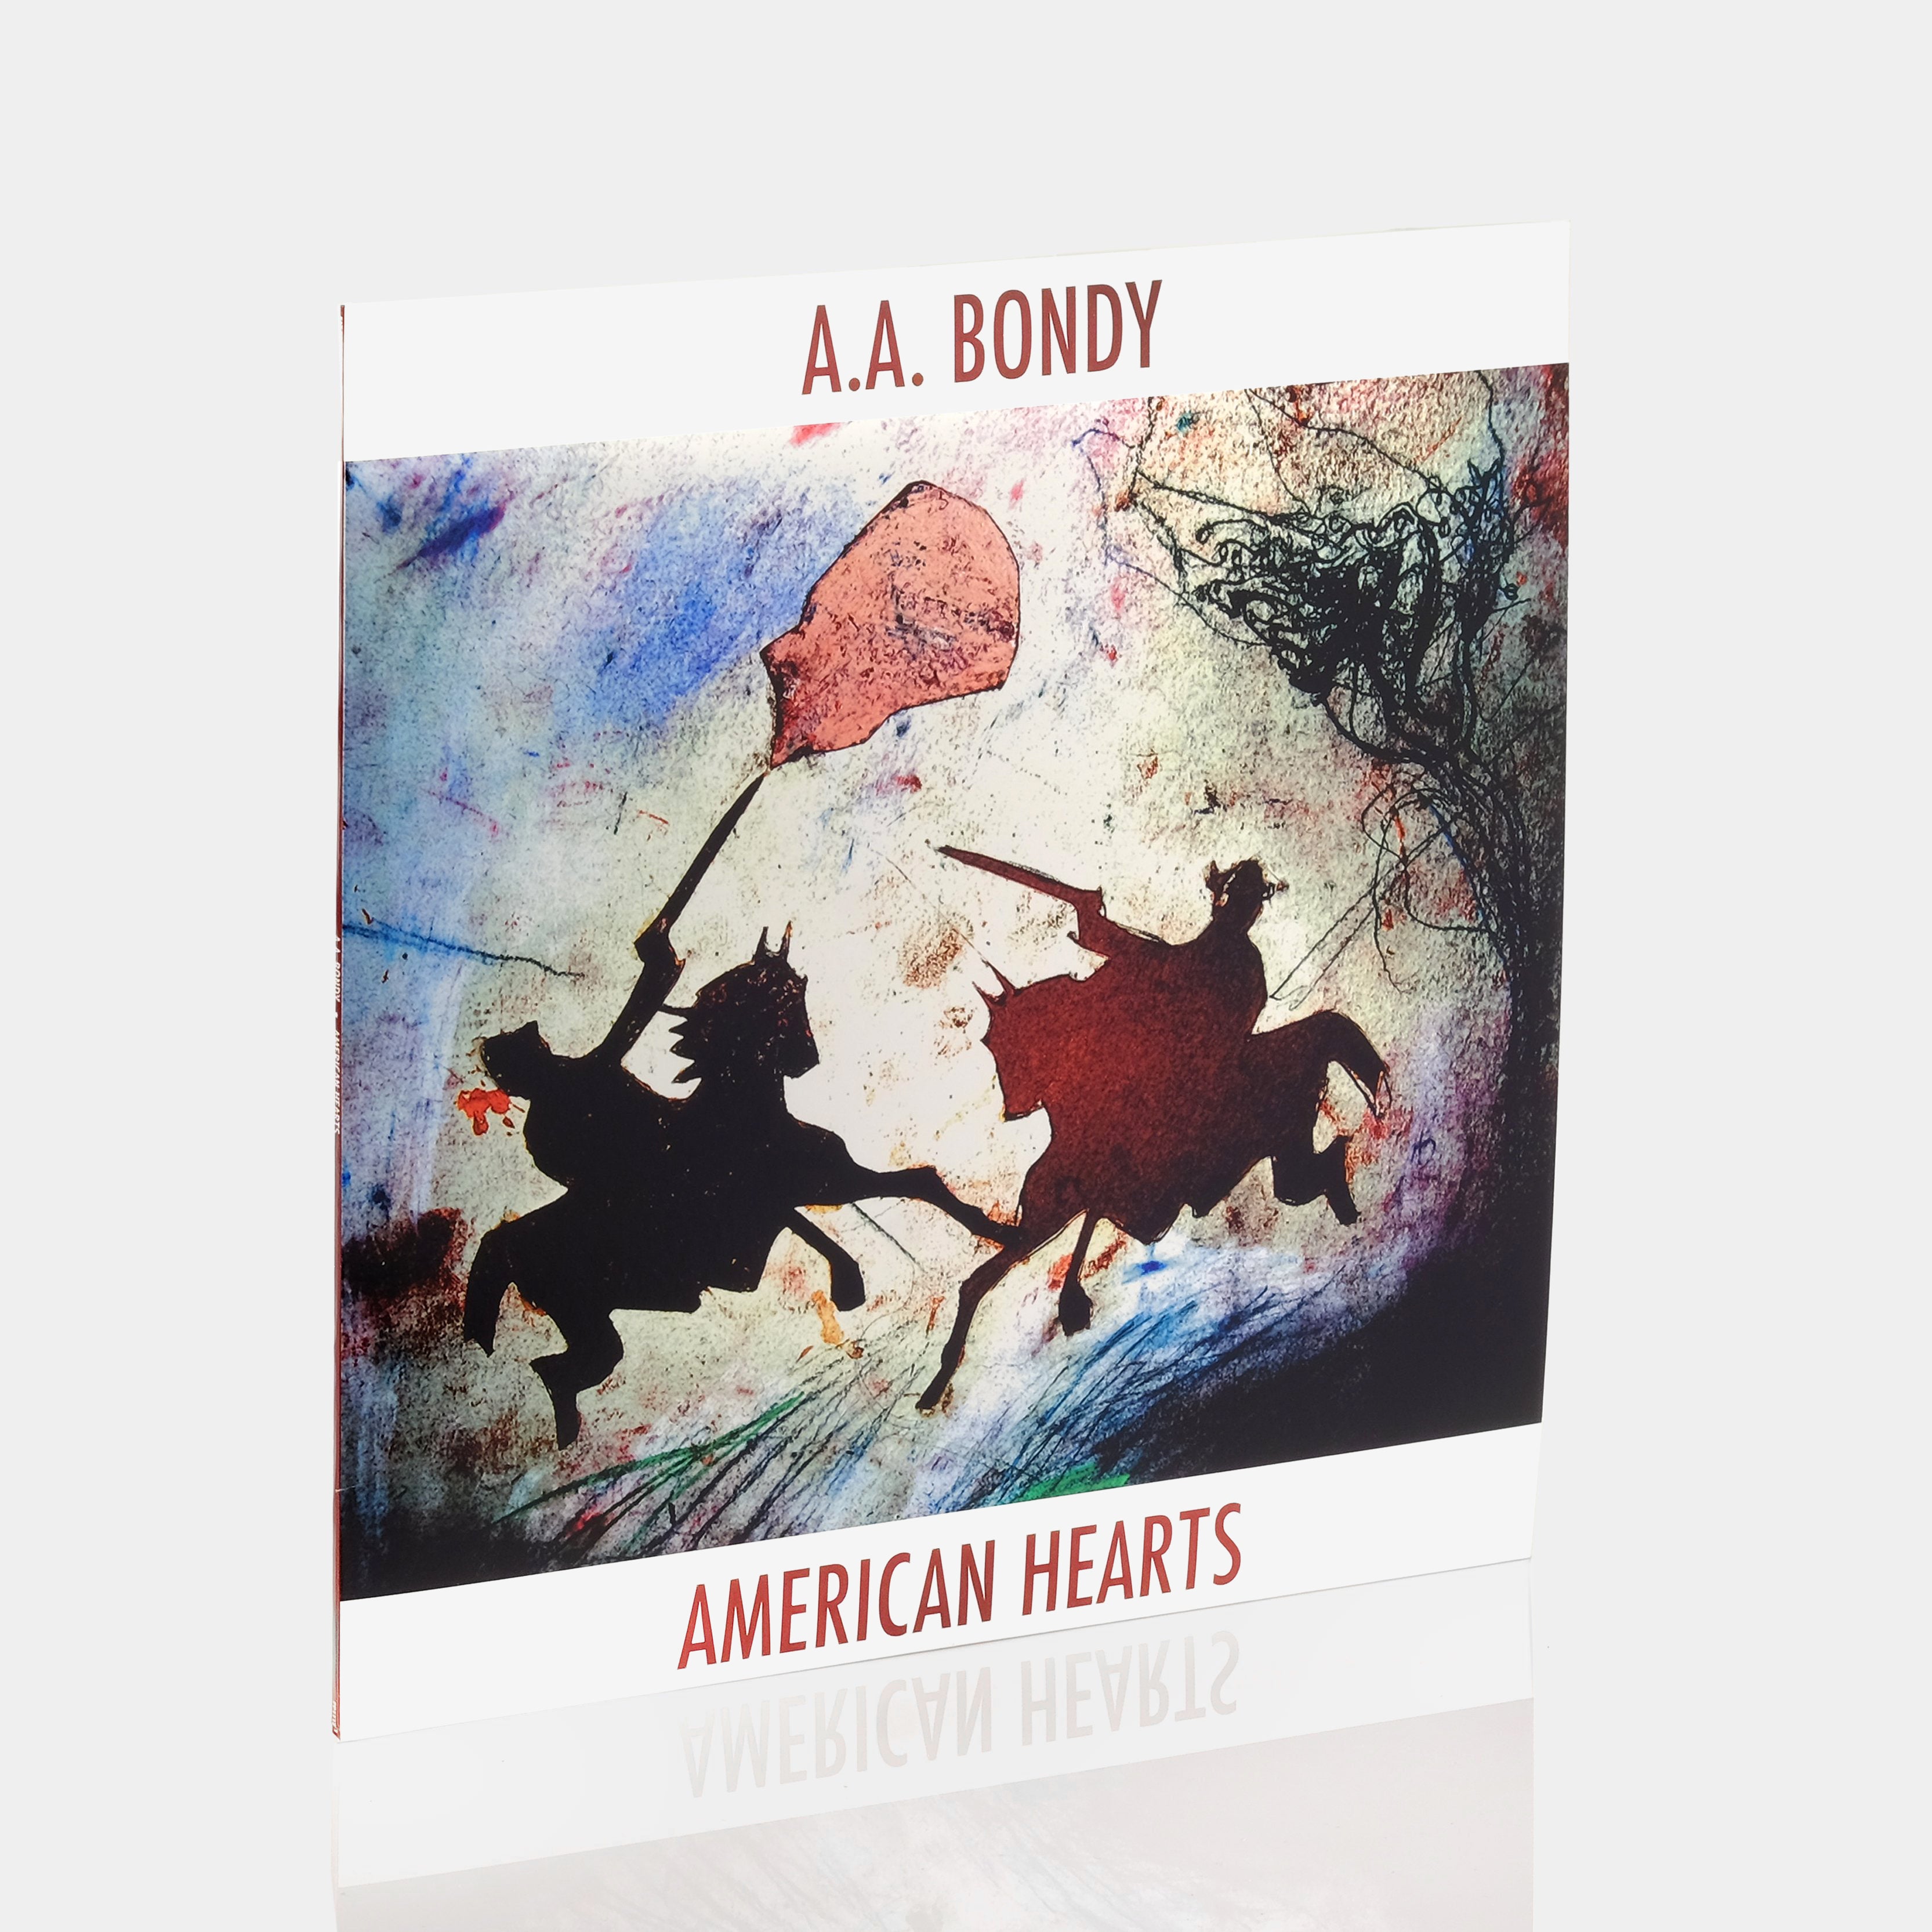 A.A. Bondy - American Hearts LP Vinyl Record